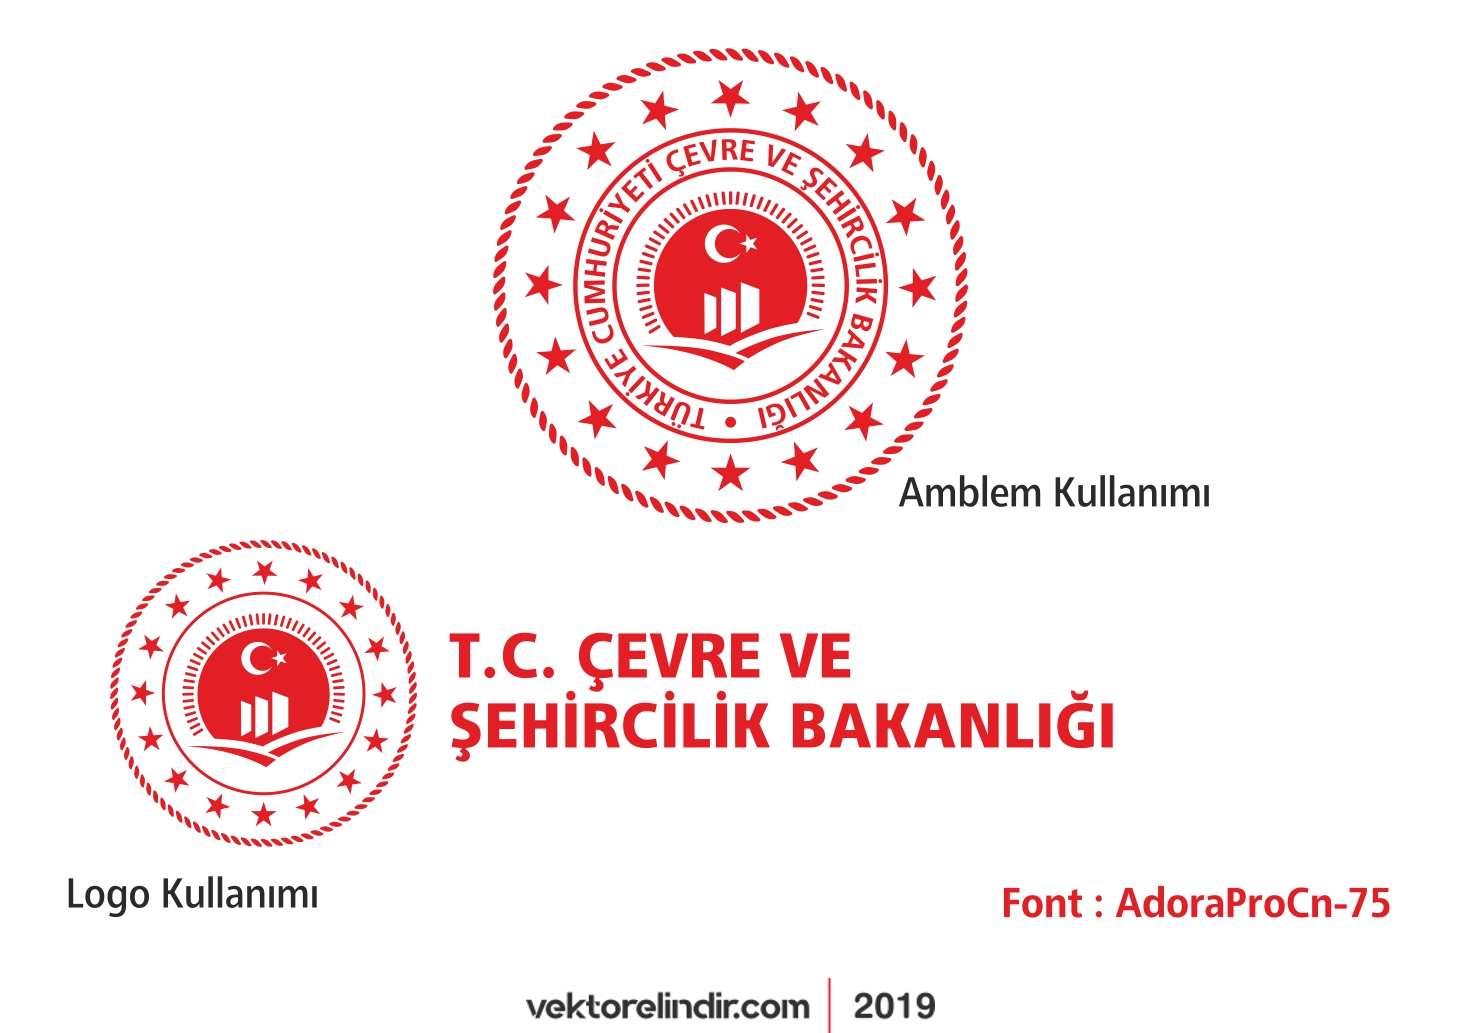 T.C. Çevre ve Şehircilik Bakanlığı Yeni Logo 2018 Vektörel